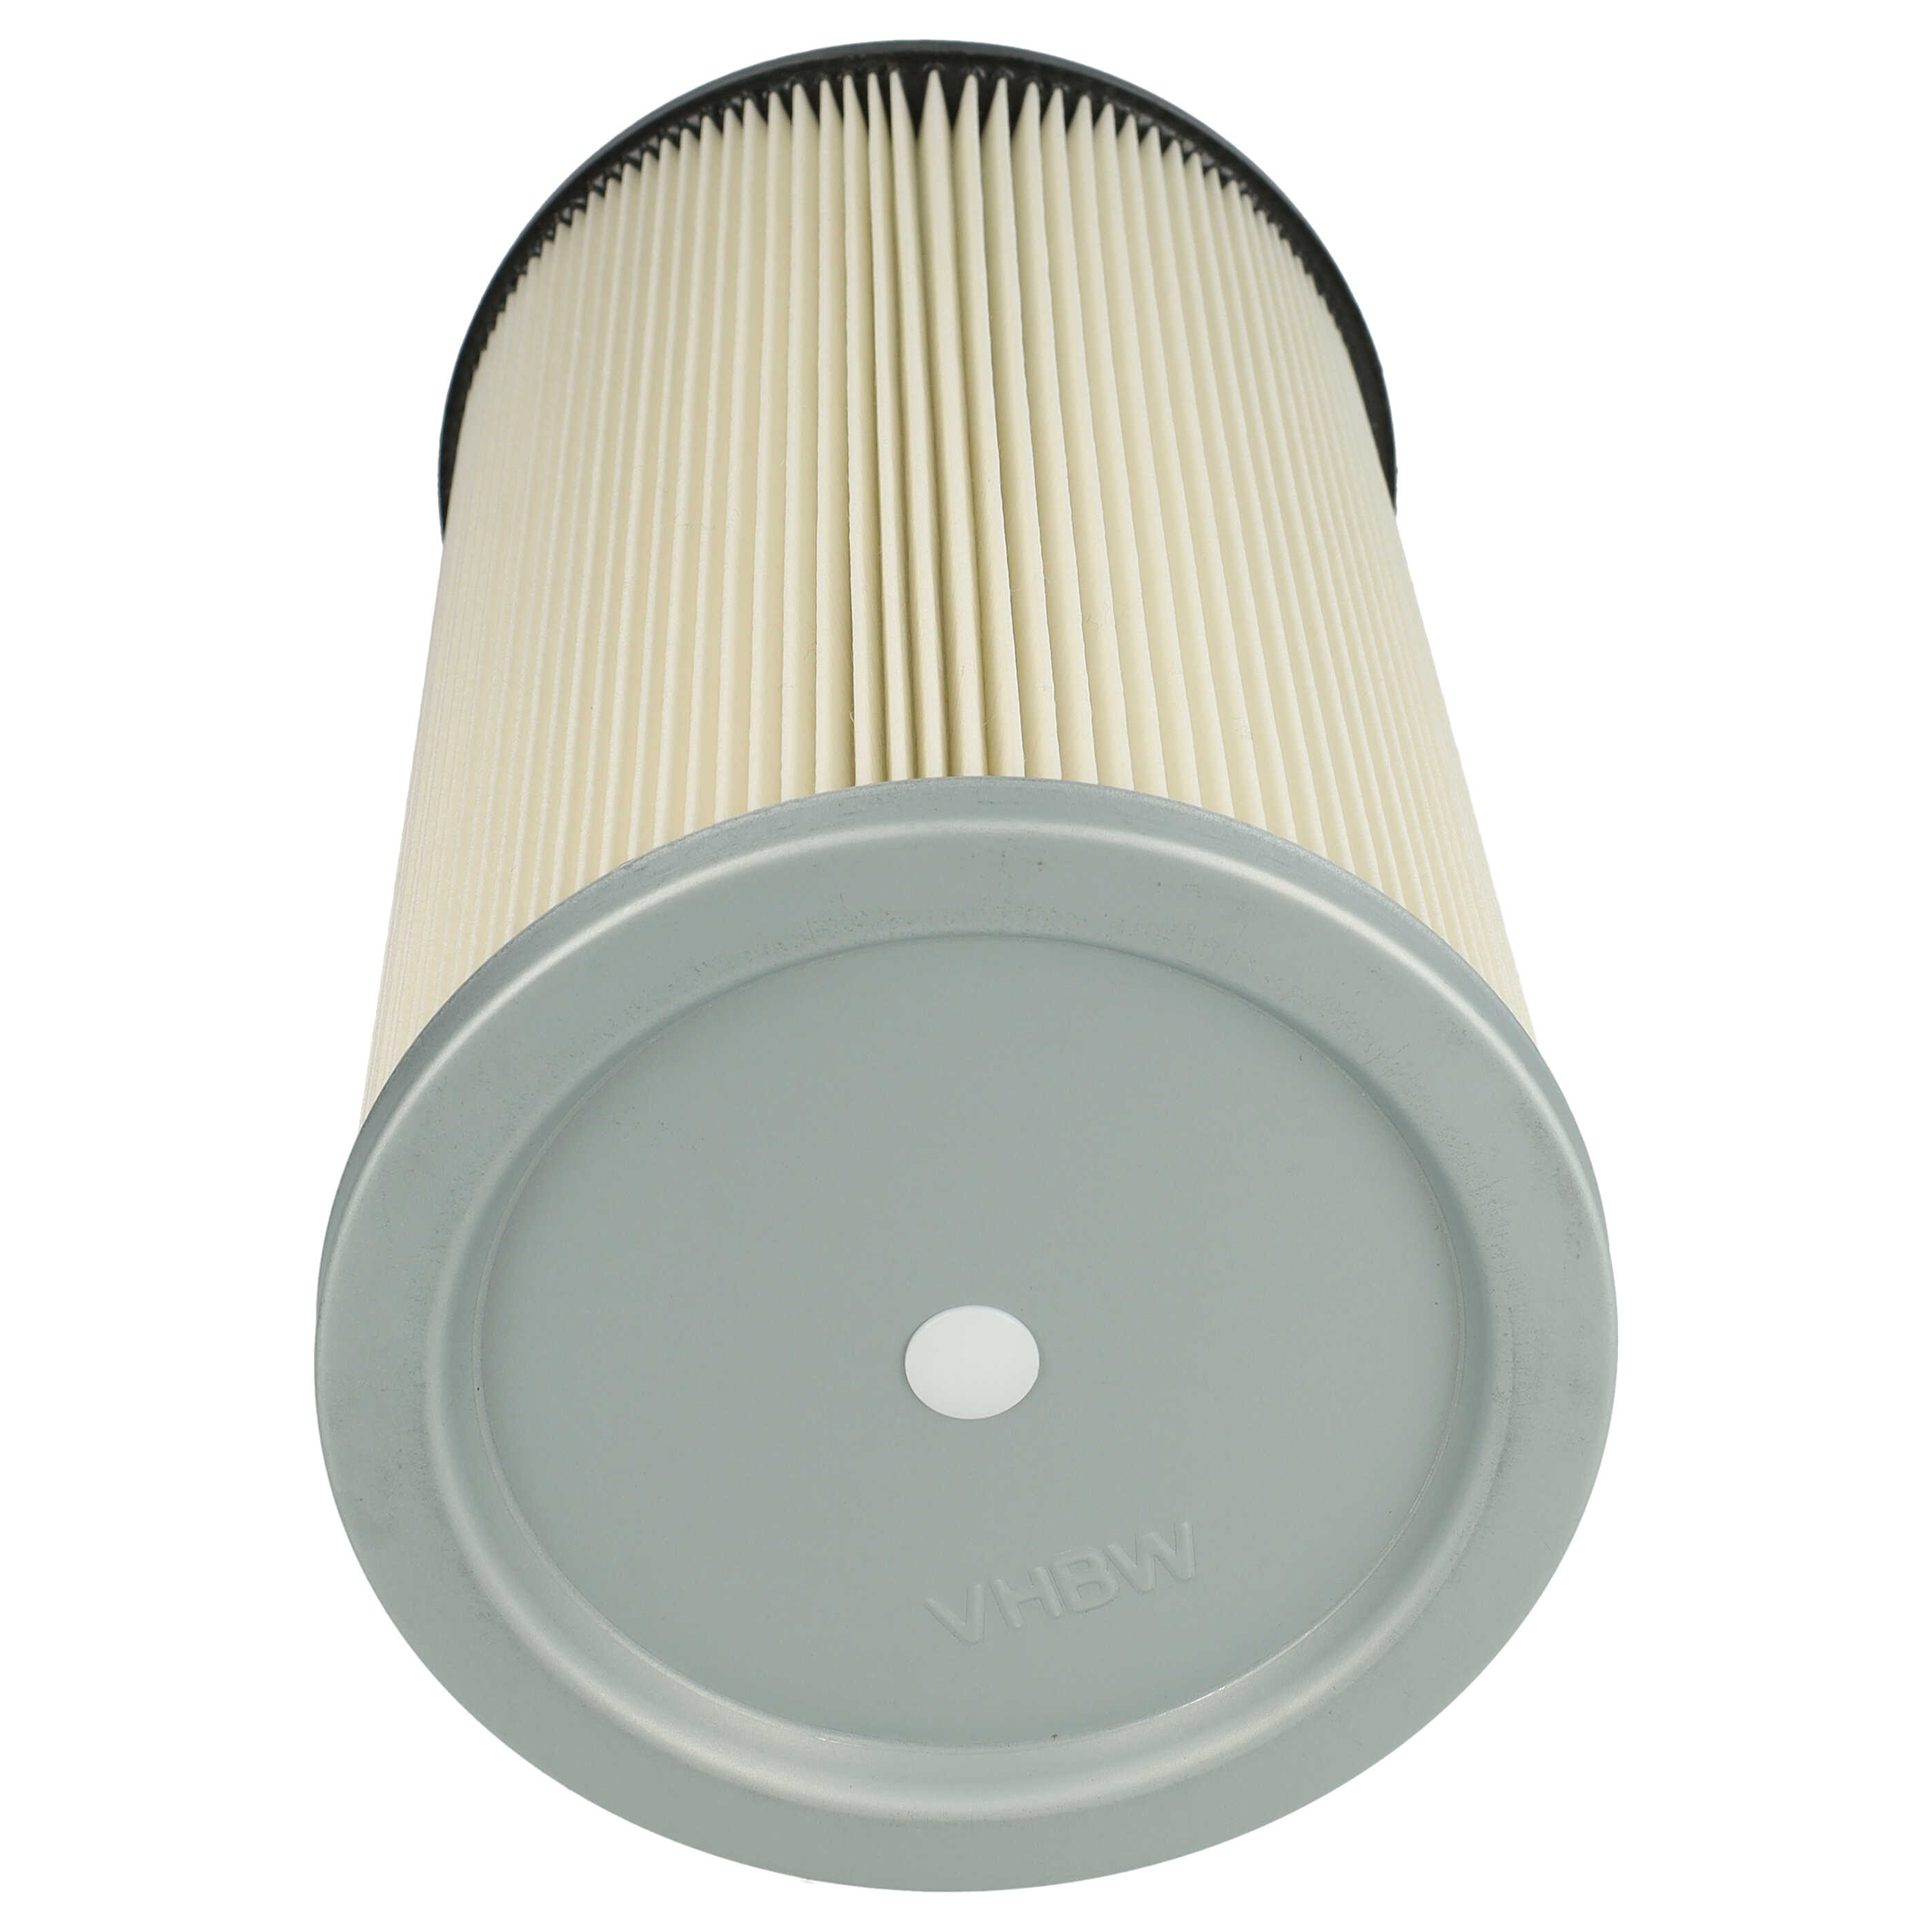 Filtro sostituisce Kärcher 57310070, 5.731-007.0 per aspirapolvere - filtro cartucce, blu / argento / bianco